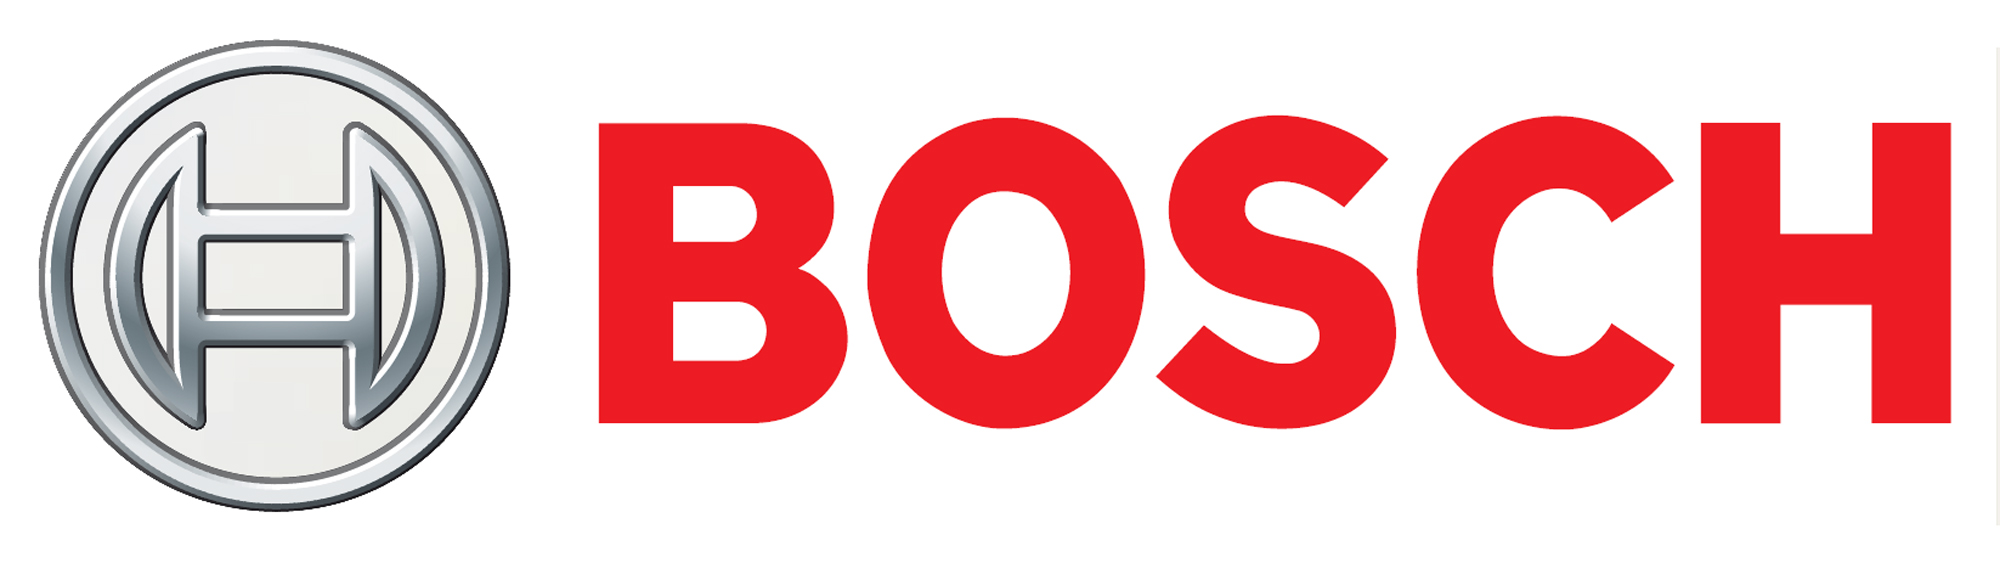 GRASSET AUTO SERVICE - logo Bosch